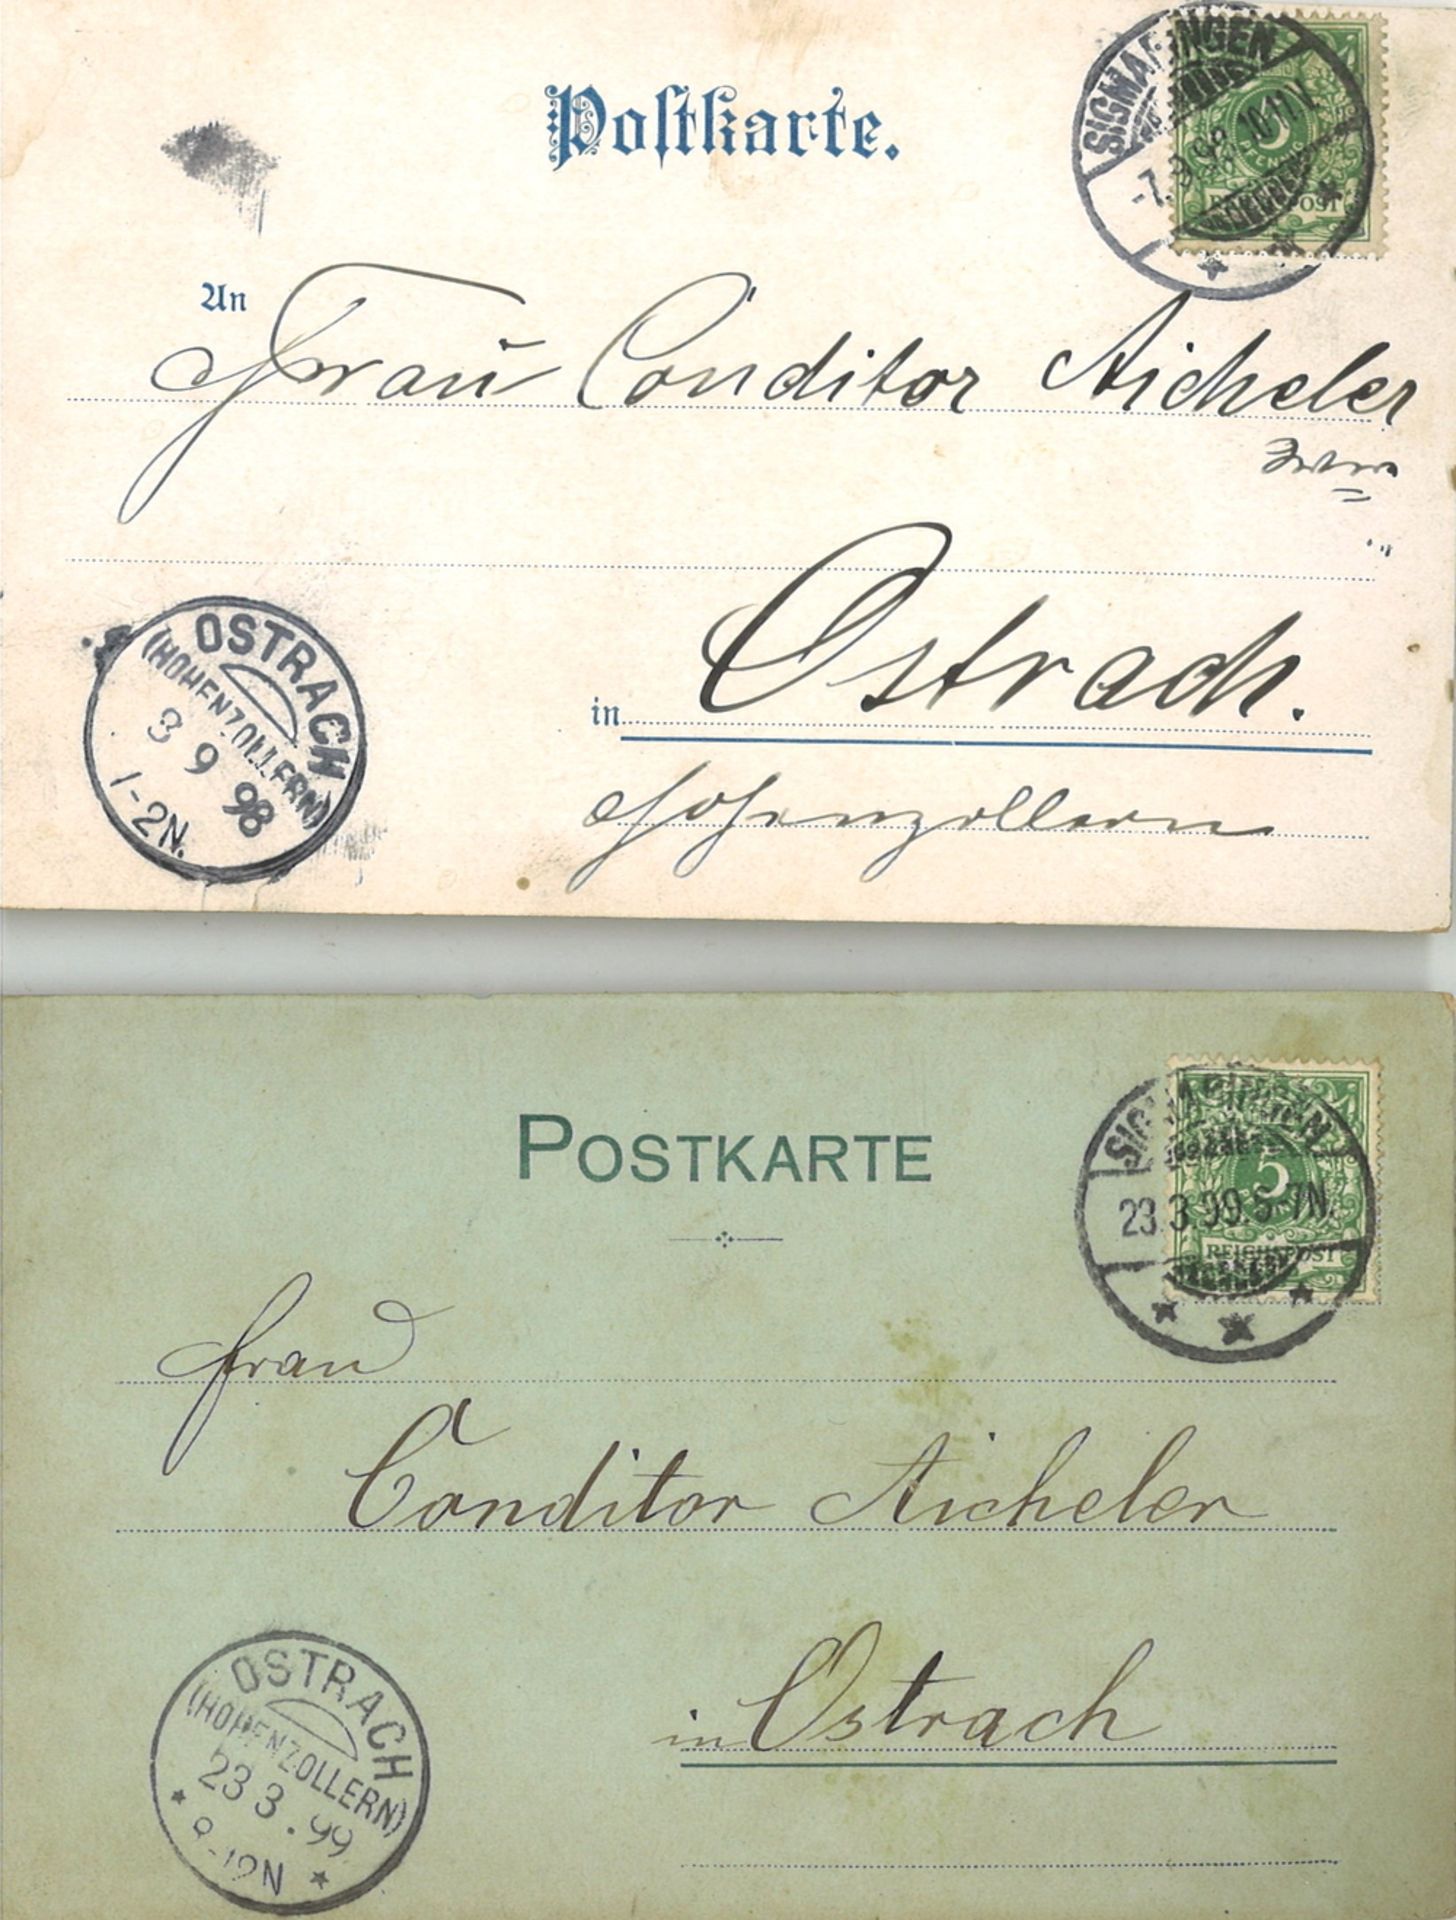 2 Postkarten "Gruss aus Sigmaringen", gelaufen. Reichspost - Image 2 of 2